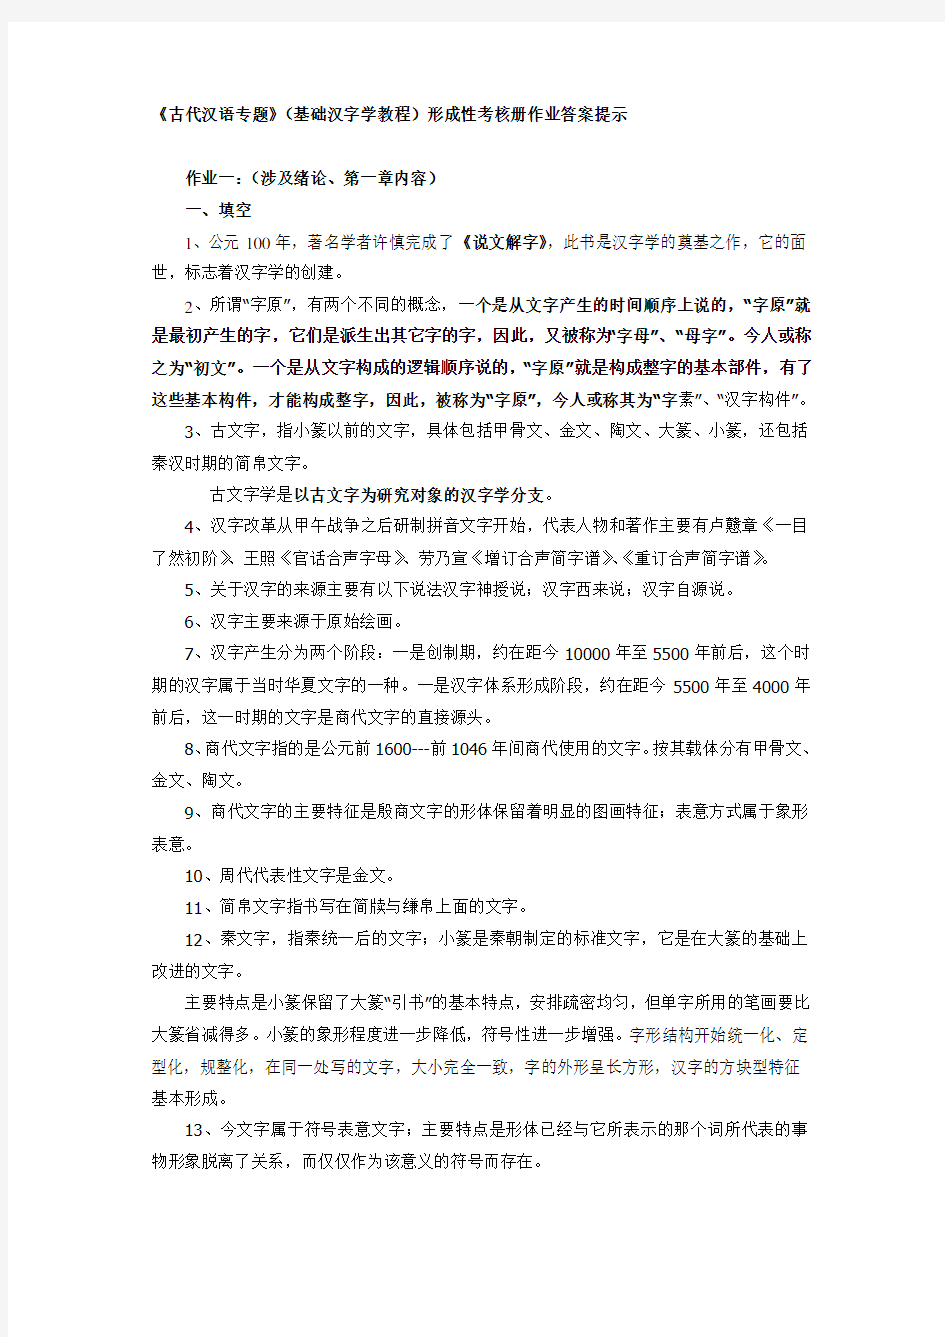 2017年电大古代汉语专题形成性考核册作业答案-全